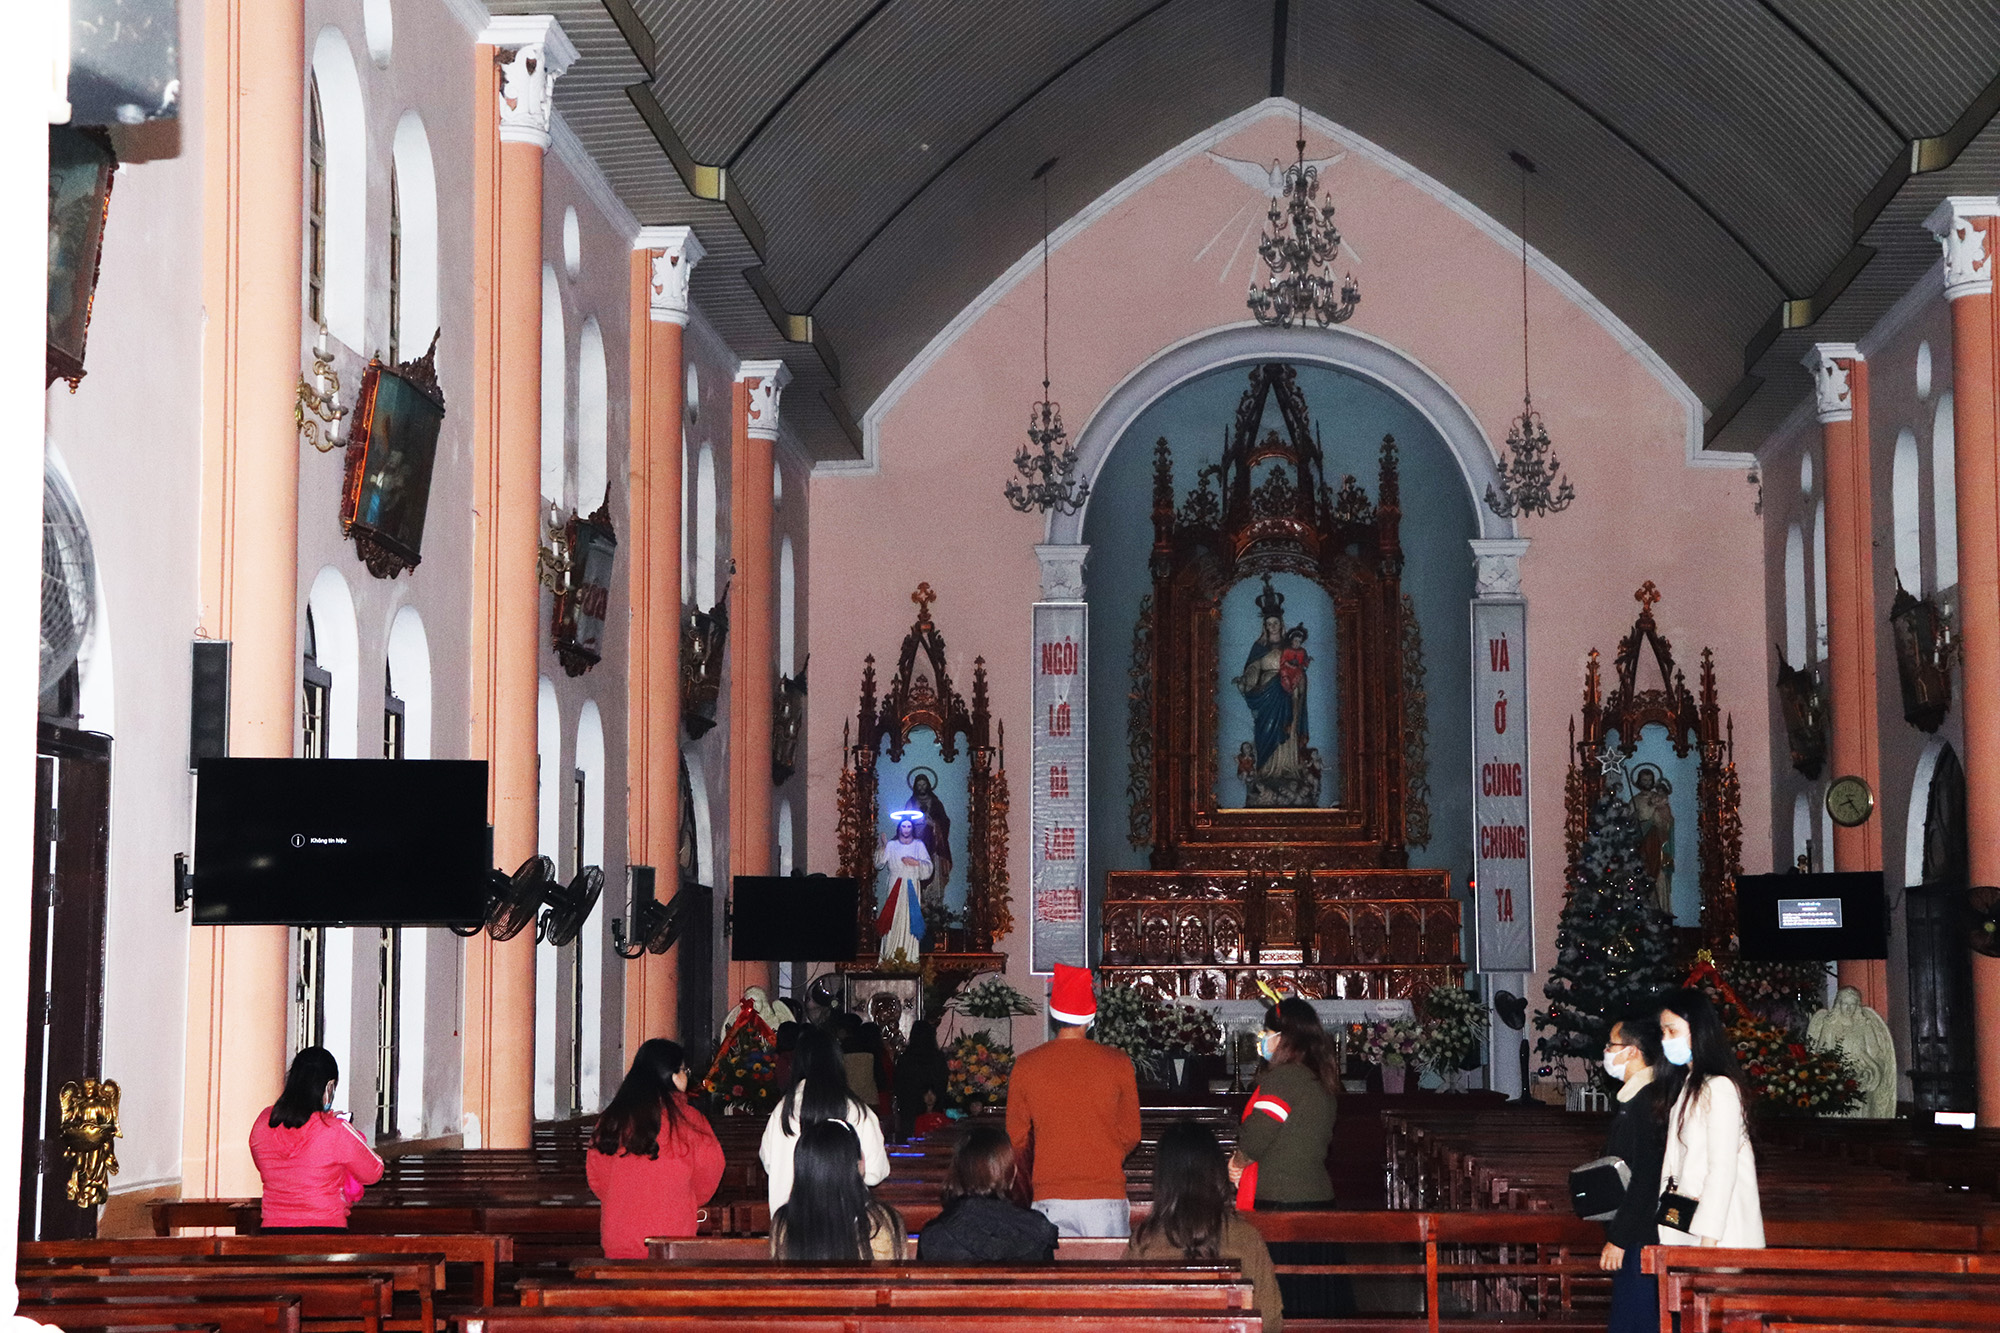 Nhiều người dân đến nhà thờ rất sớm để cầu nguyện và chờ tới lễ giang sính